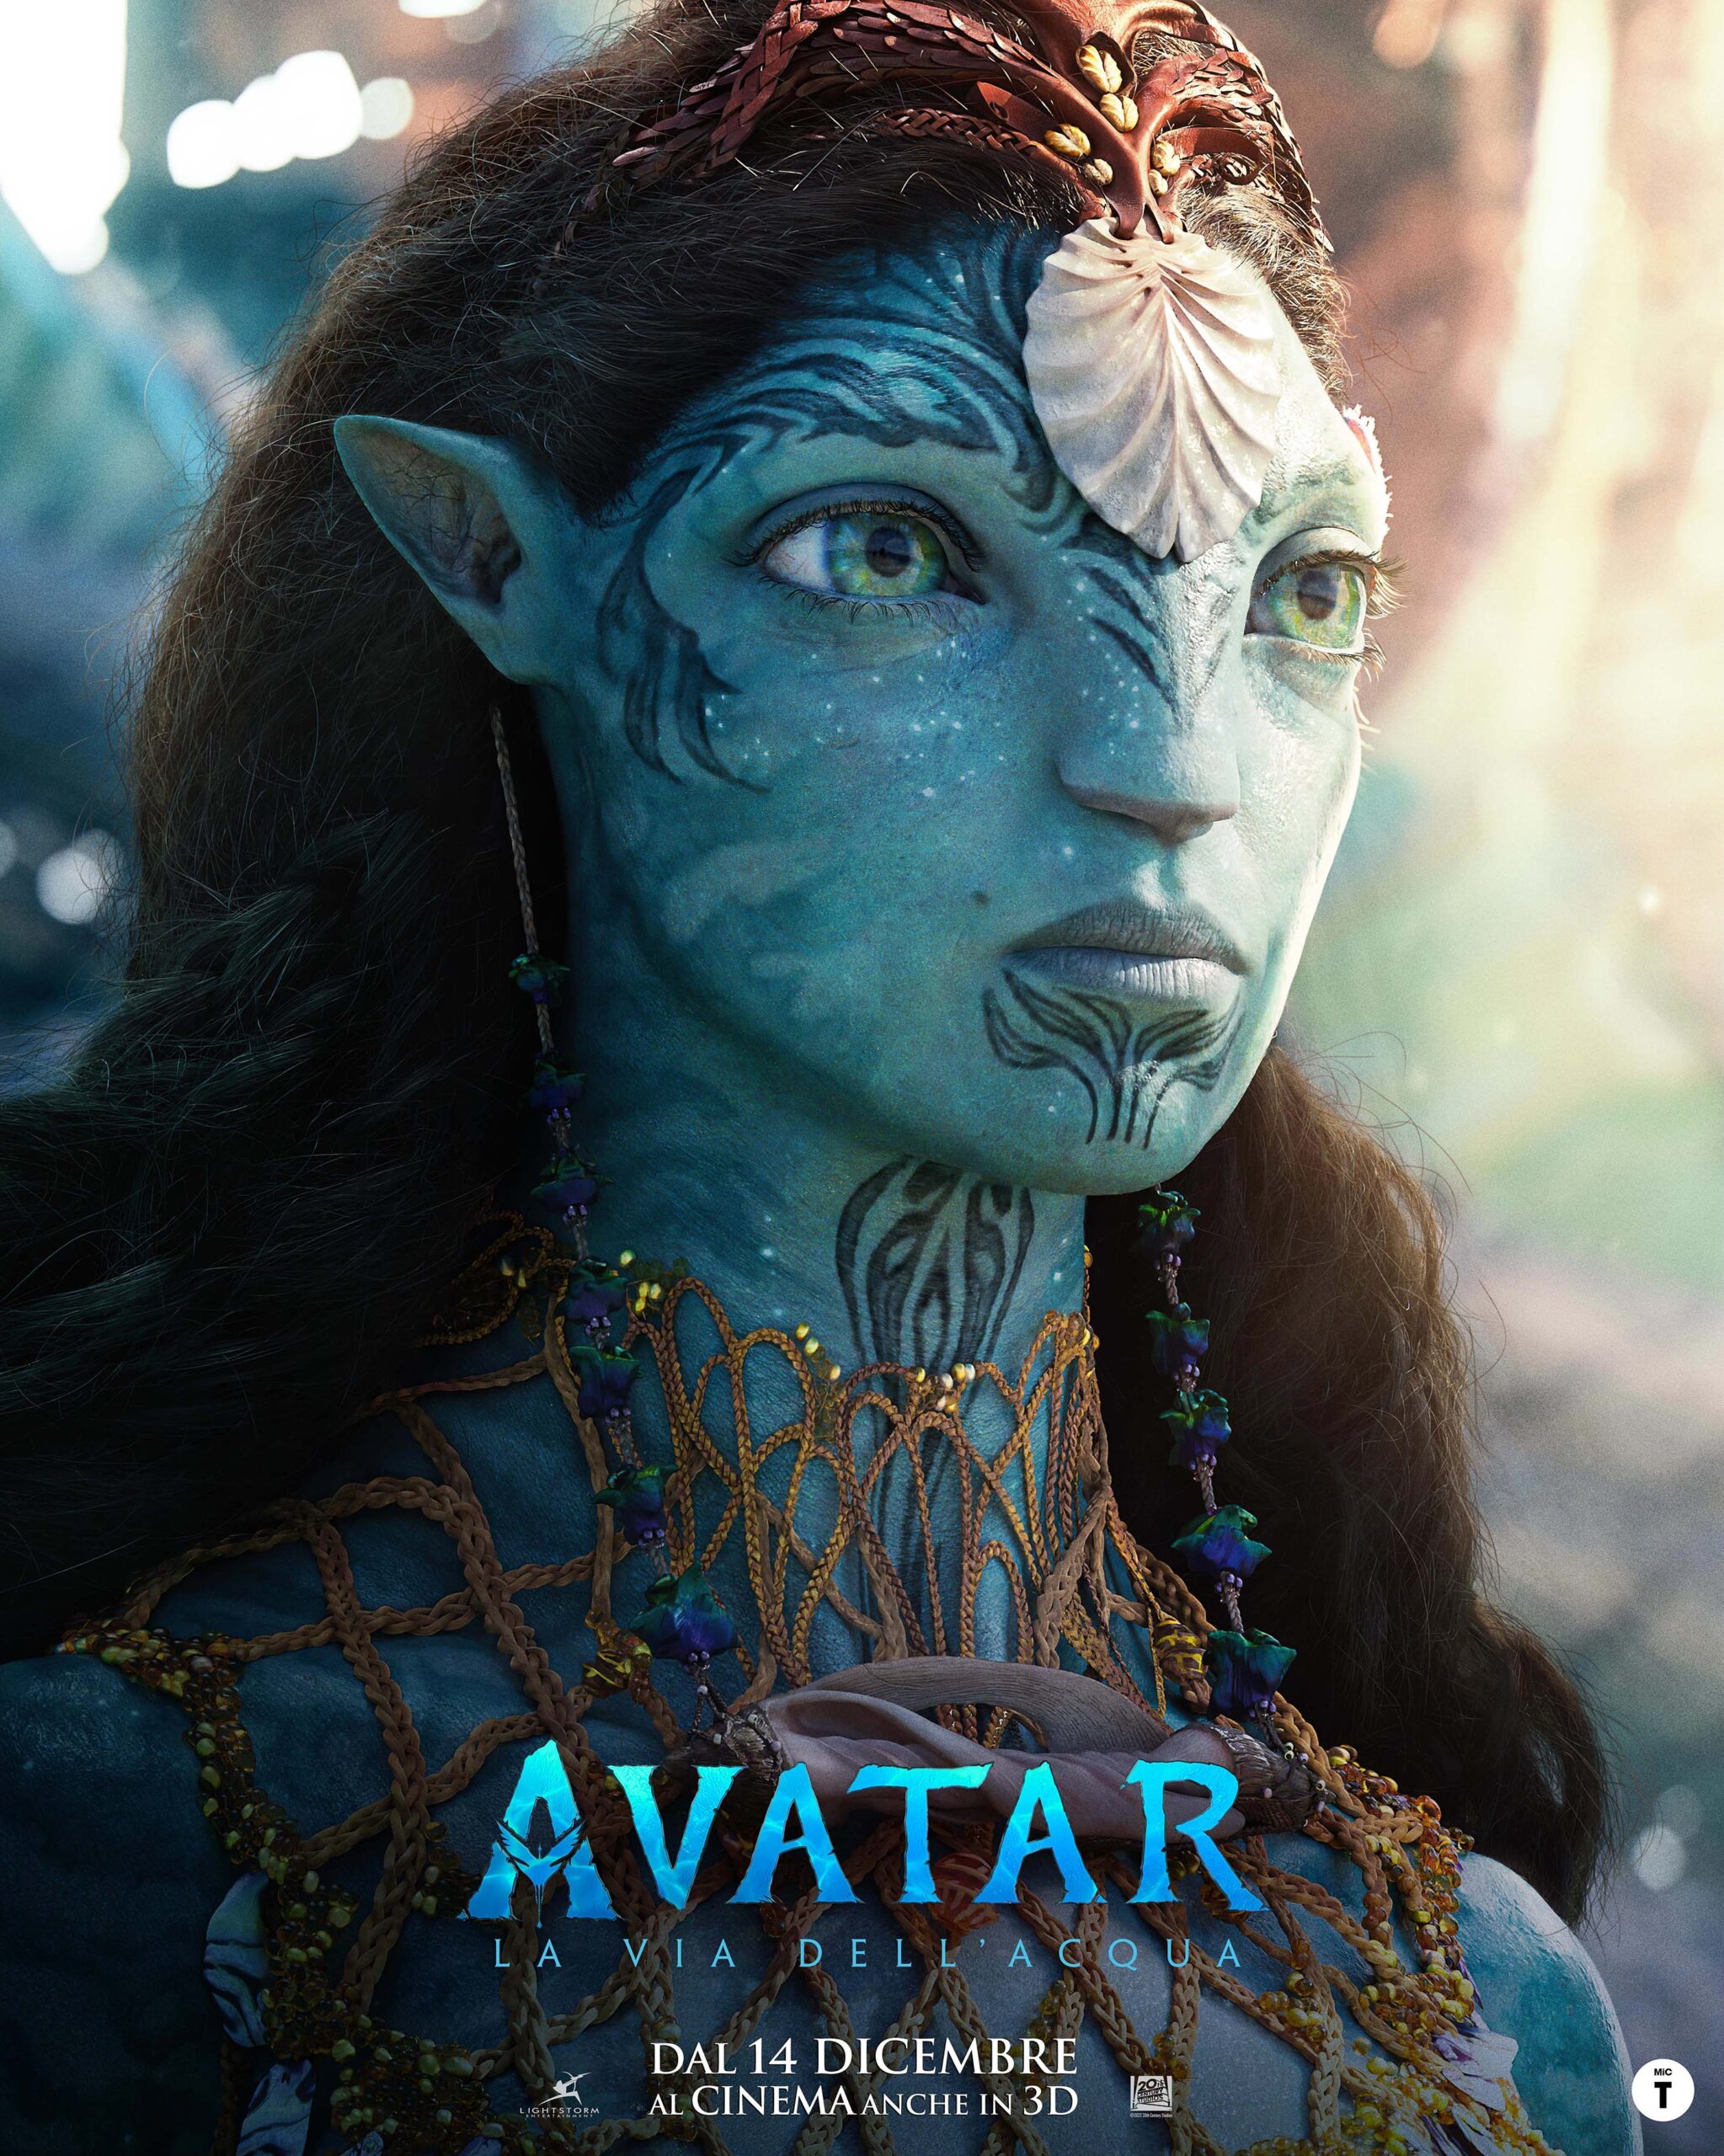 Avatar La Via dellAcqua svelato il trailer ufficiale